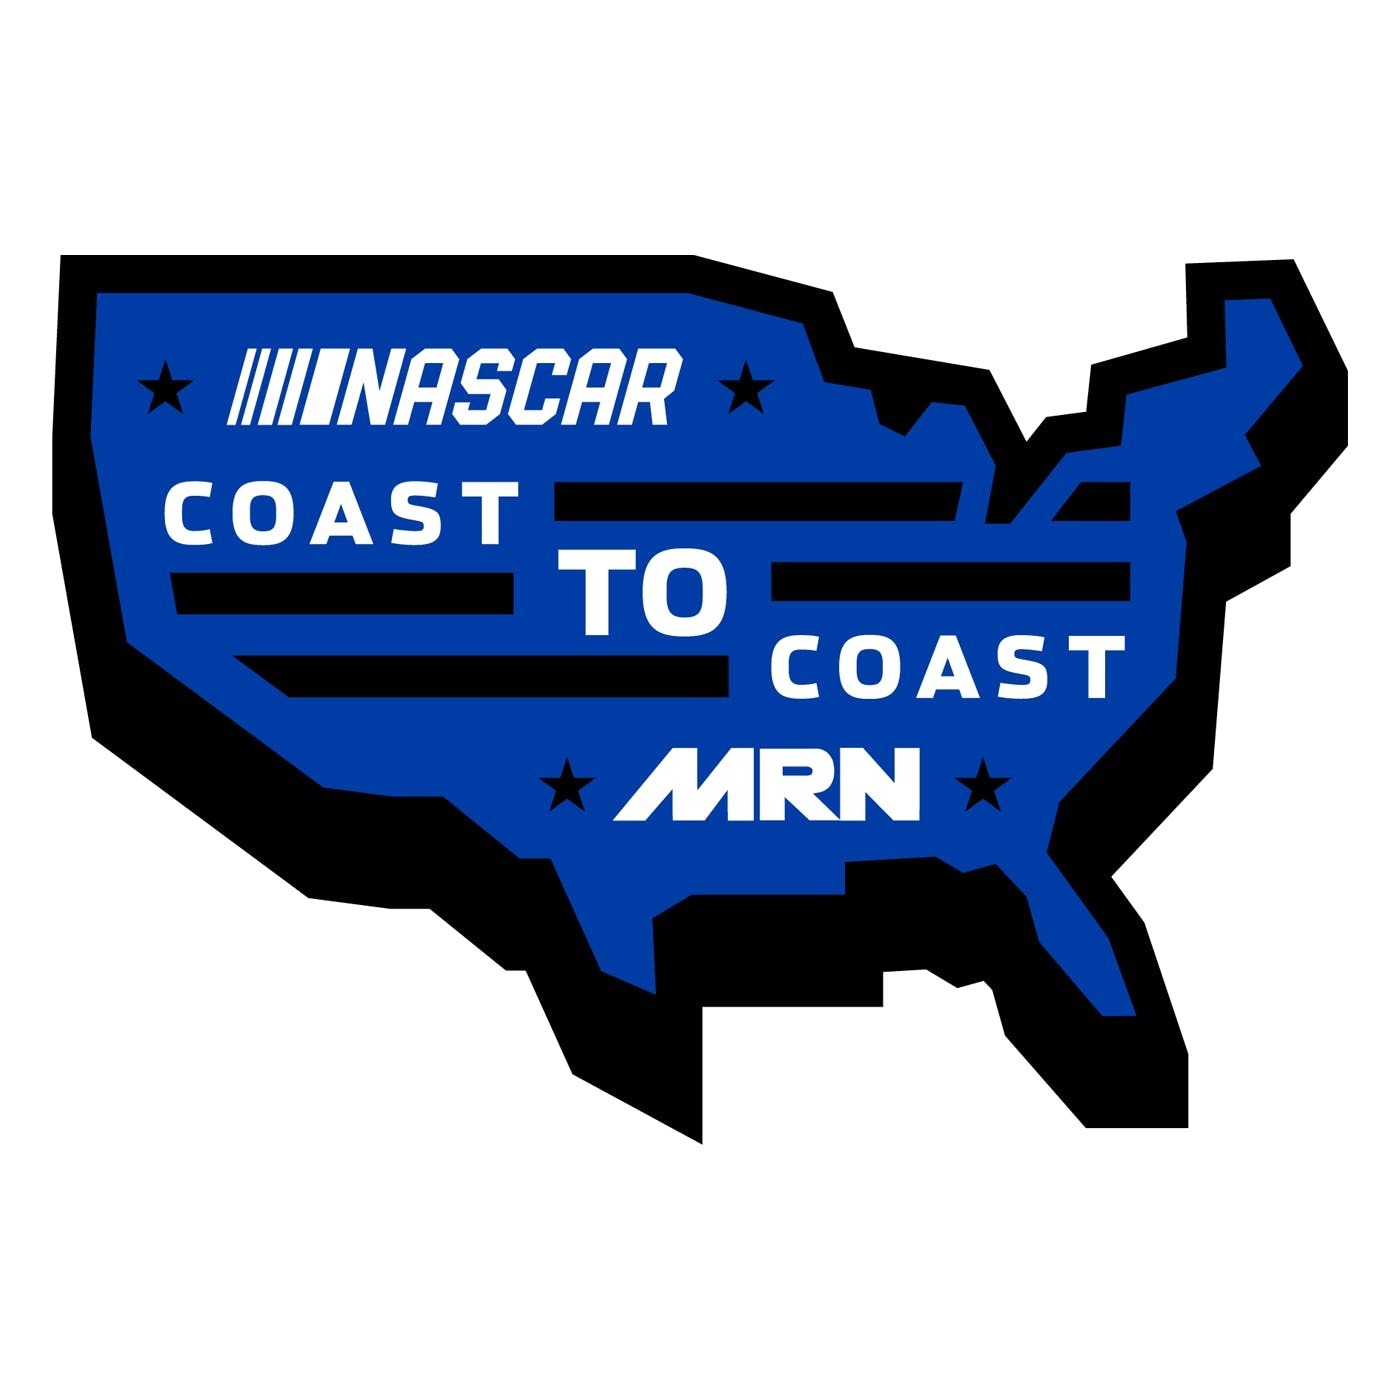 NASCAR Coast to Coast - July 10, 2019